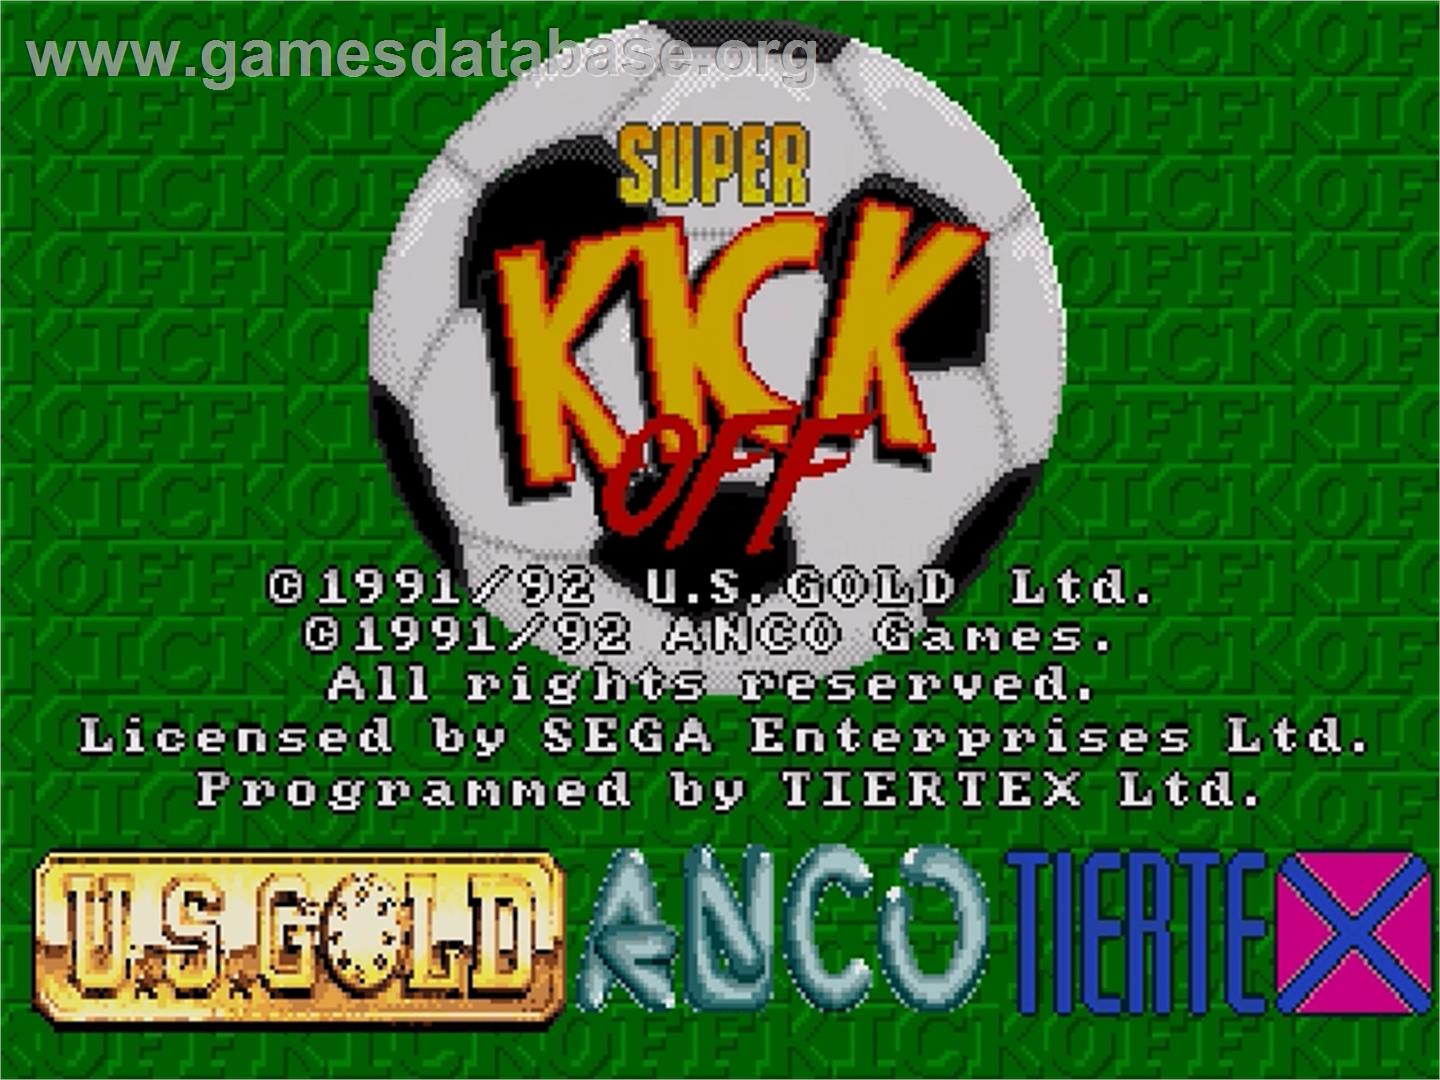 Super Kick Off - Sega Genesis - Artwork - Title Screen